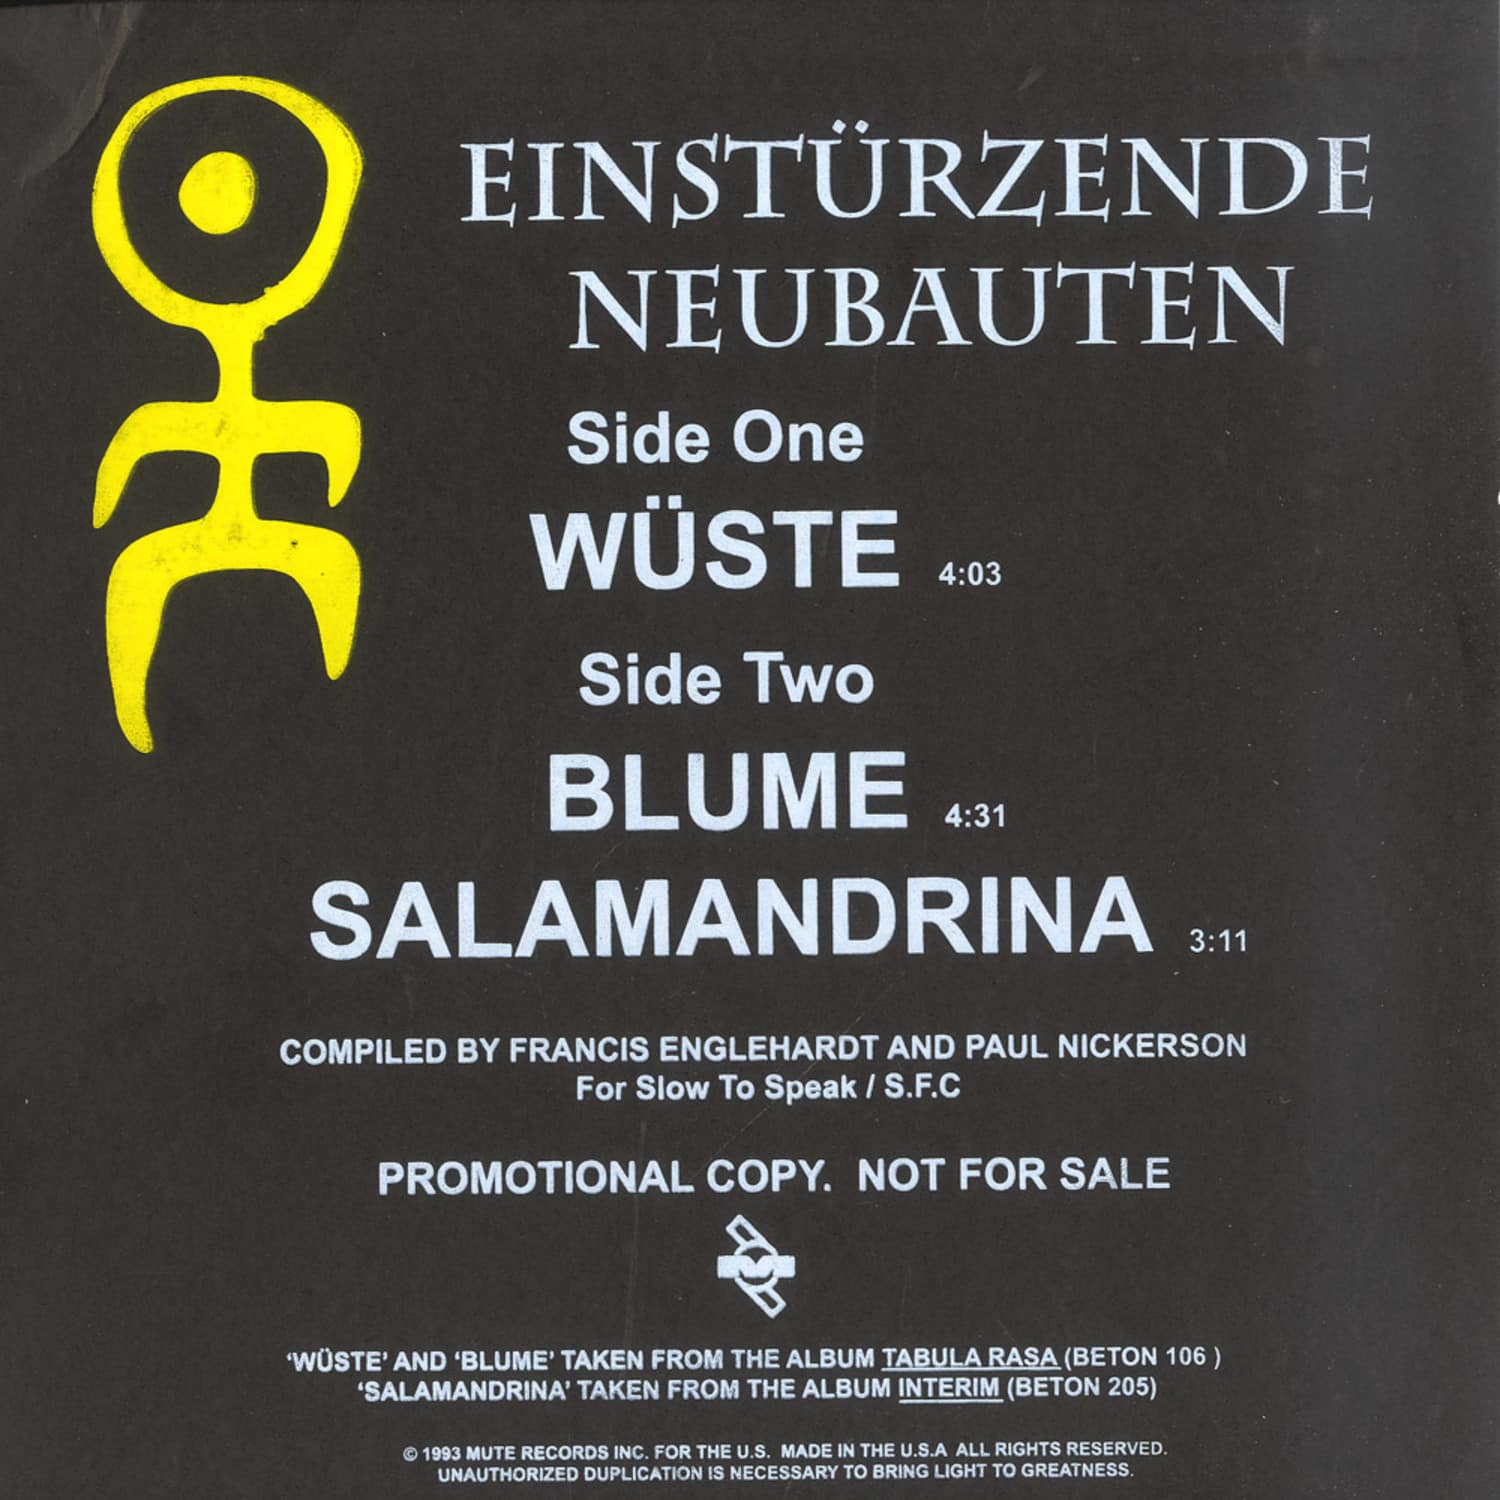 Einstuerzende Neubauten - WUESTE / BLUME / SALAMANDRINA